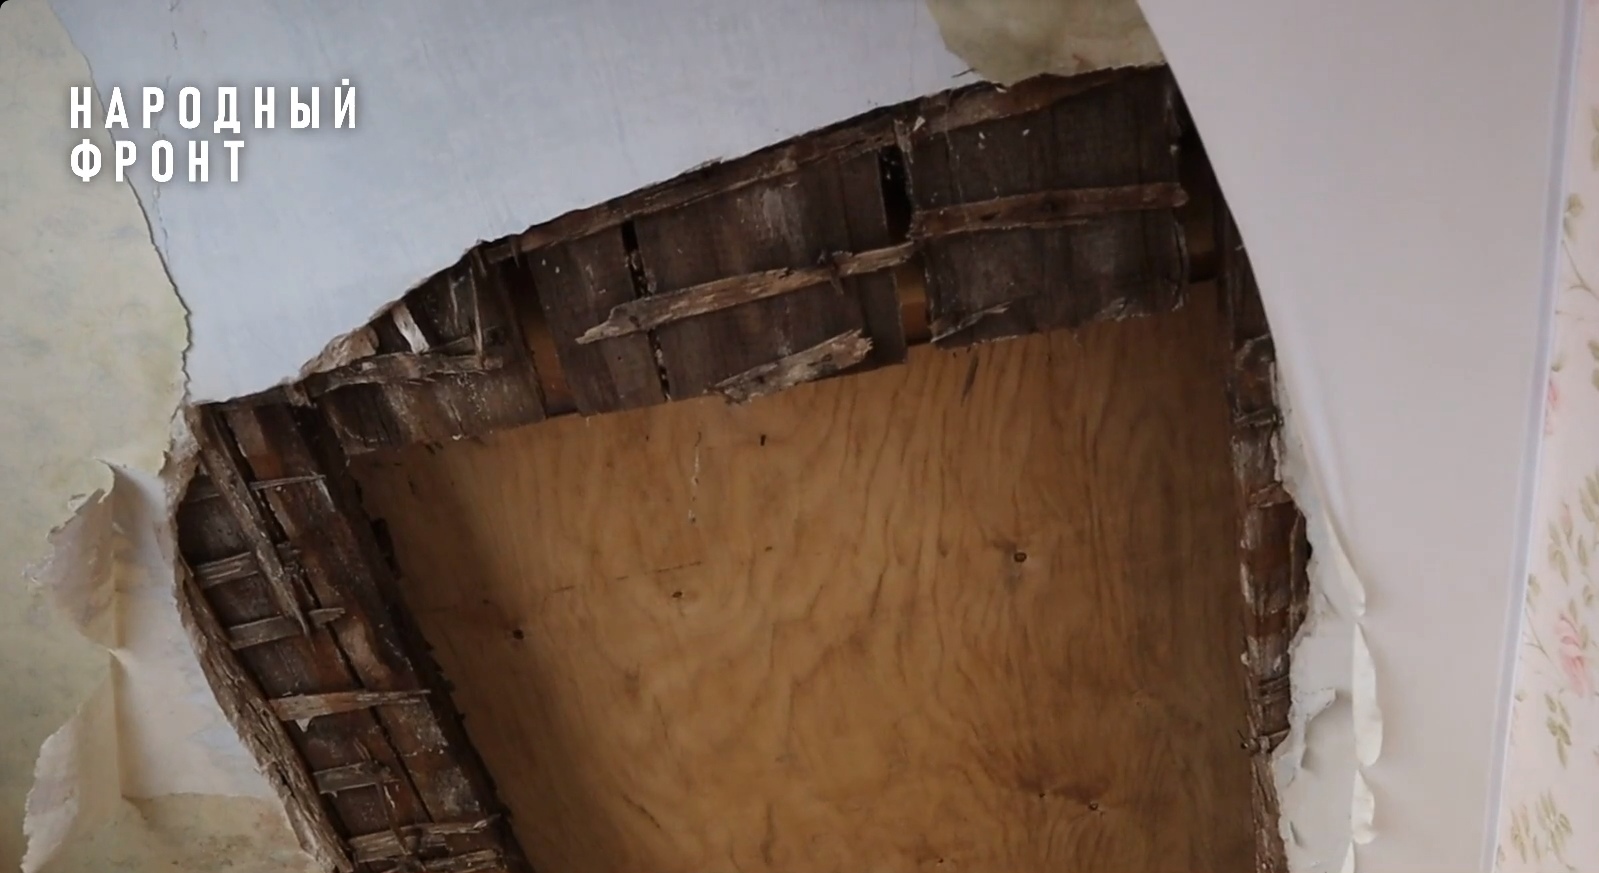 Кировские общественники добились ремонта потолка, рухнувшего в доме пенсионерки